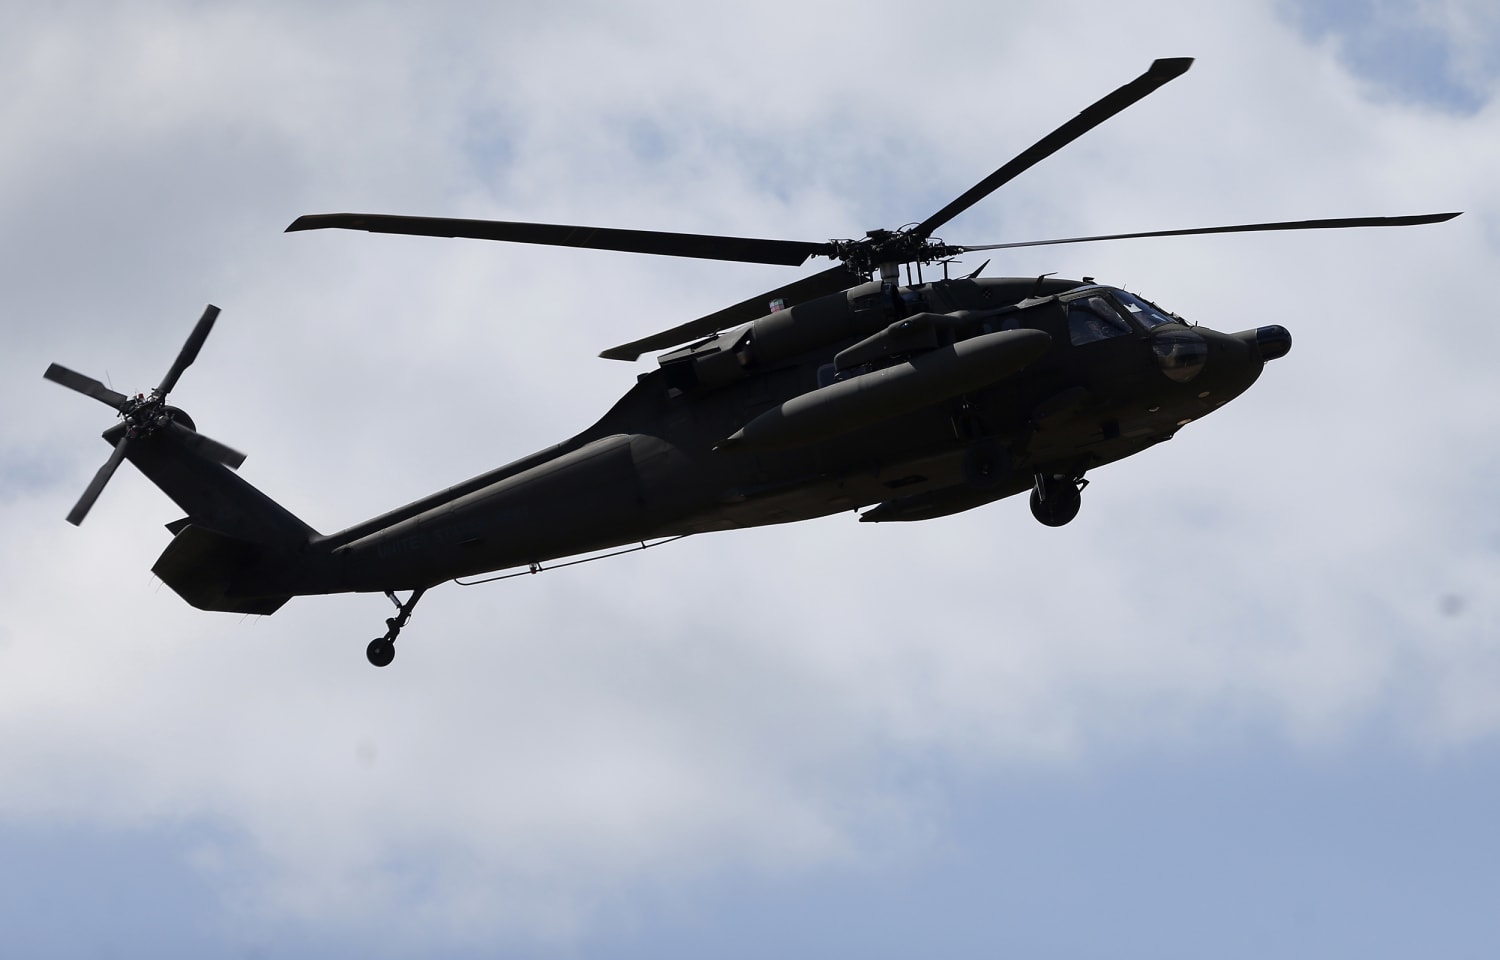 191205-uh-60-black-hawk-helicopter-2015-ac-440p_982c18780946b2340a18698a2cf43a5c.jpg